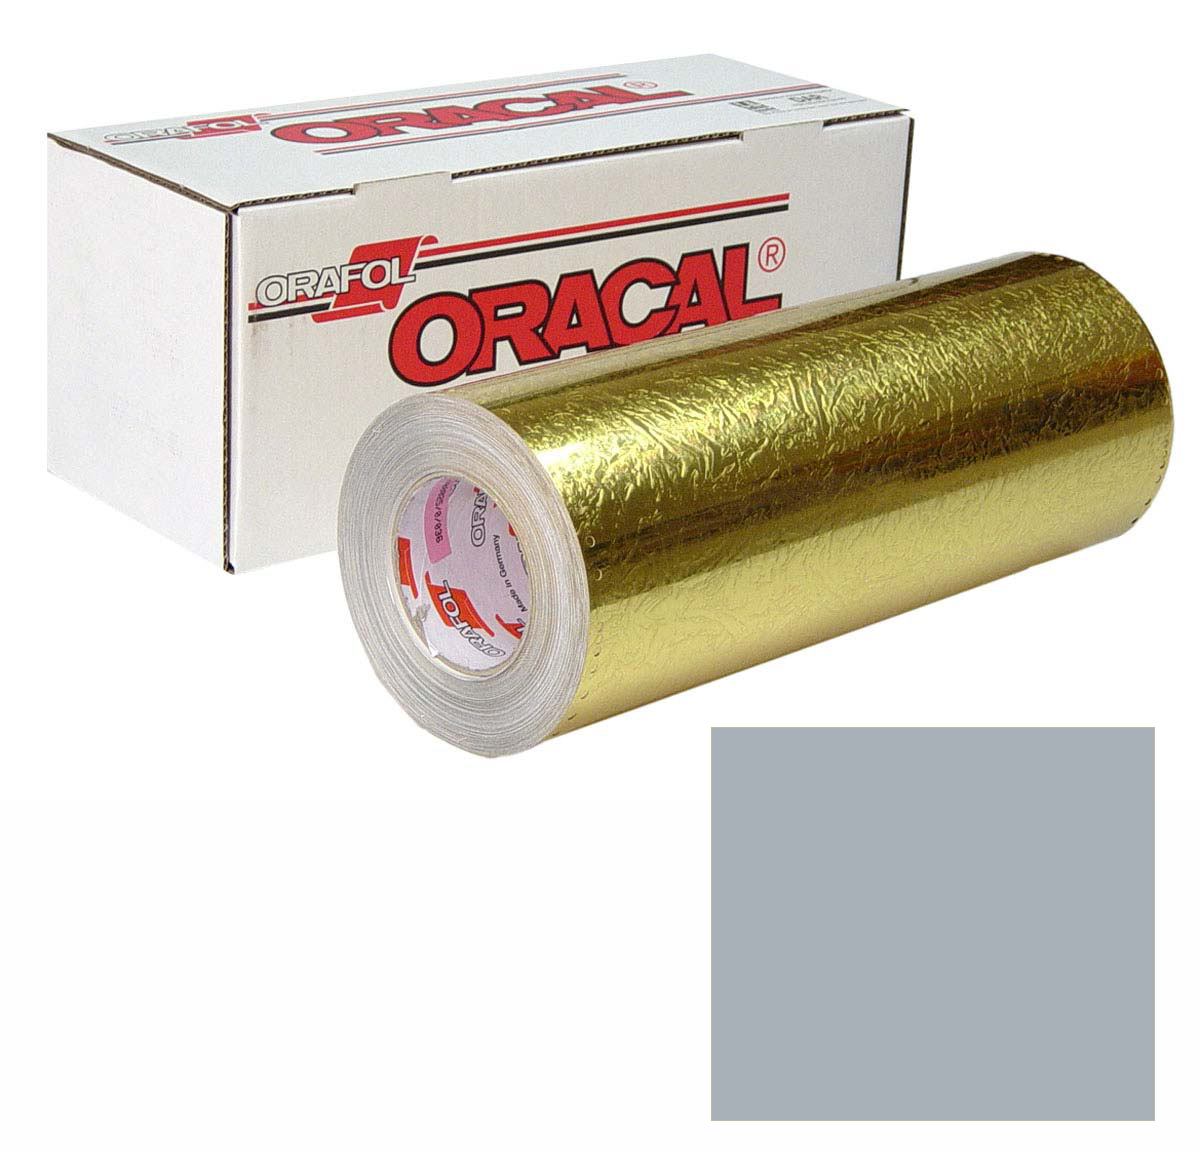 ORACAL 383 Ultraleaf 48in X 10yd 001-Chrome